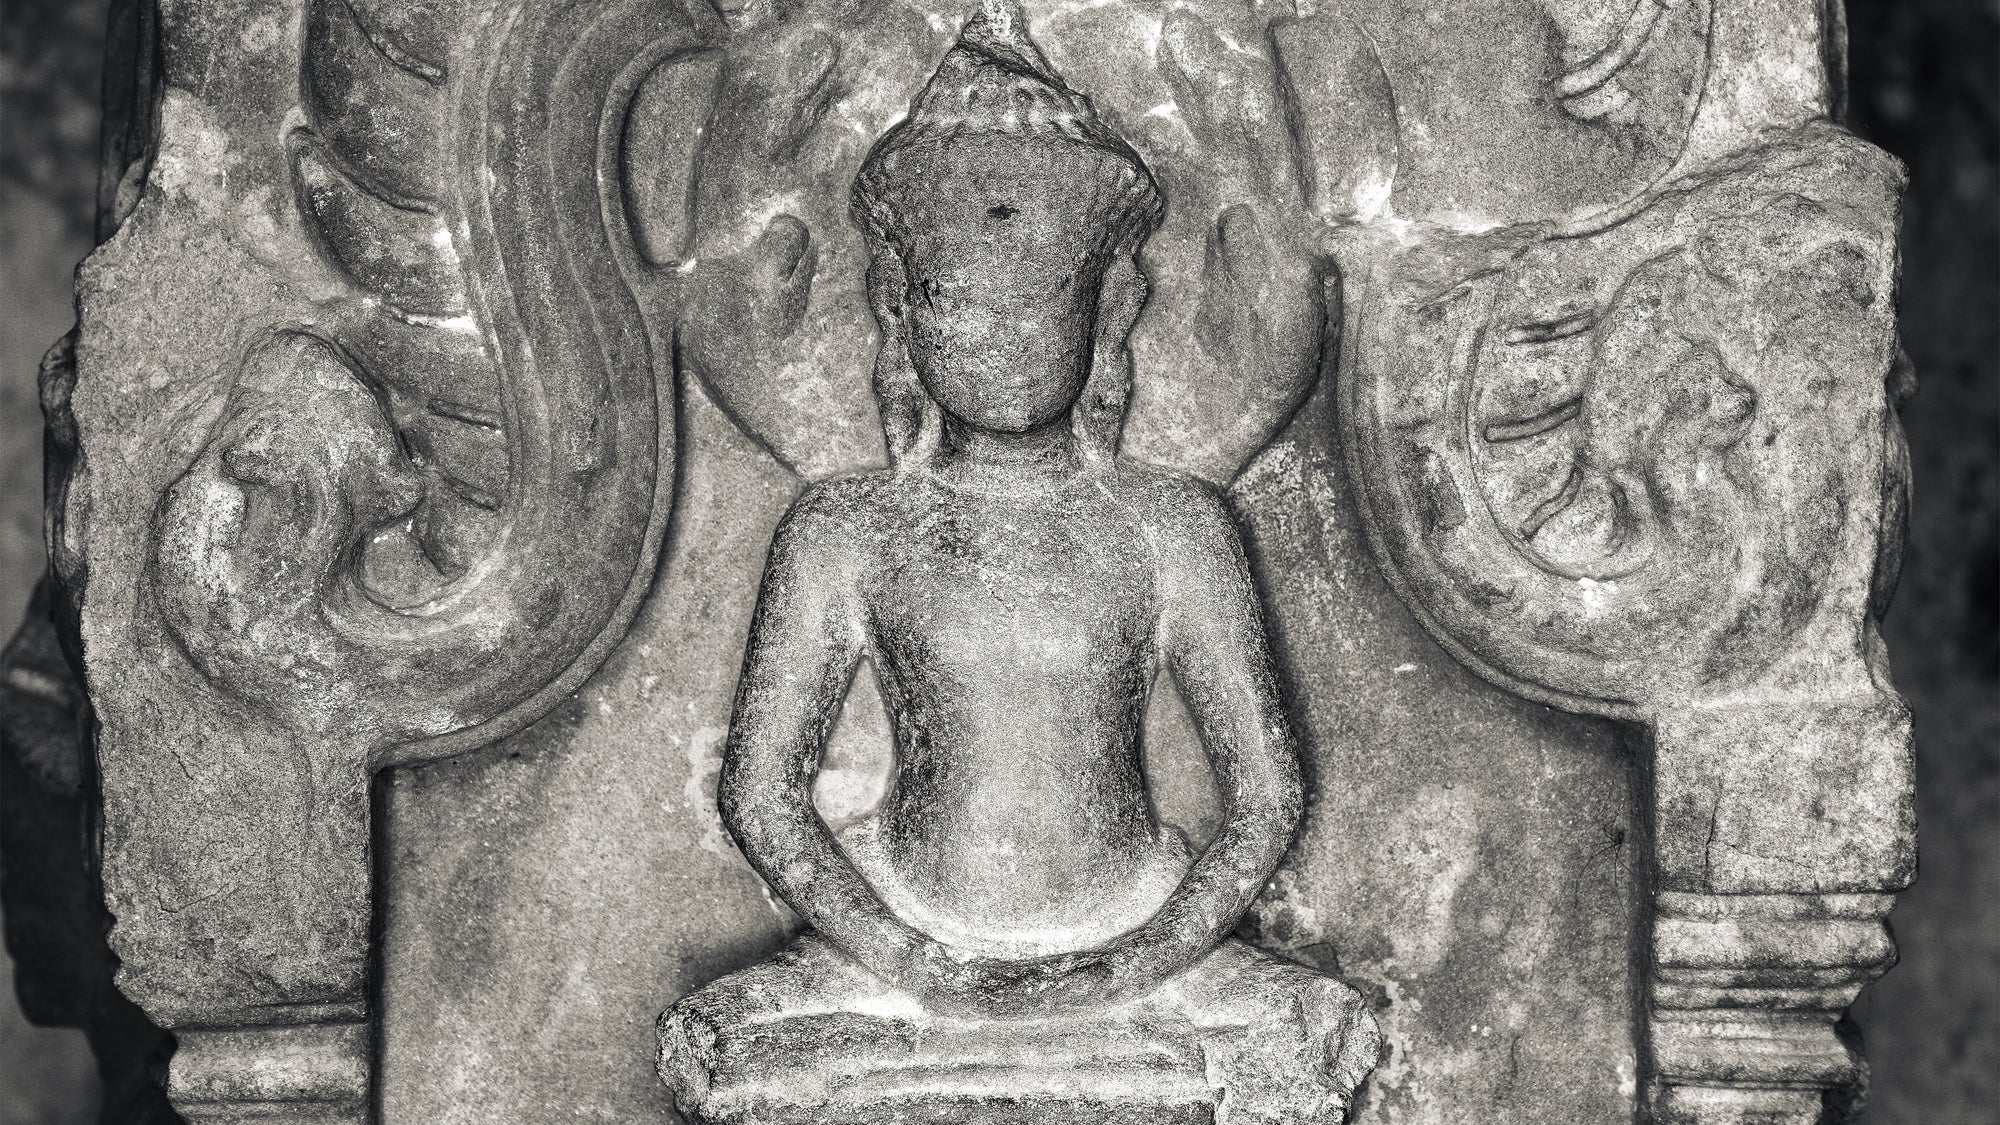 The Buddhas of Angkor